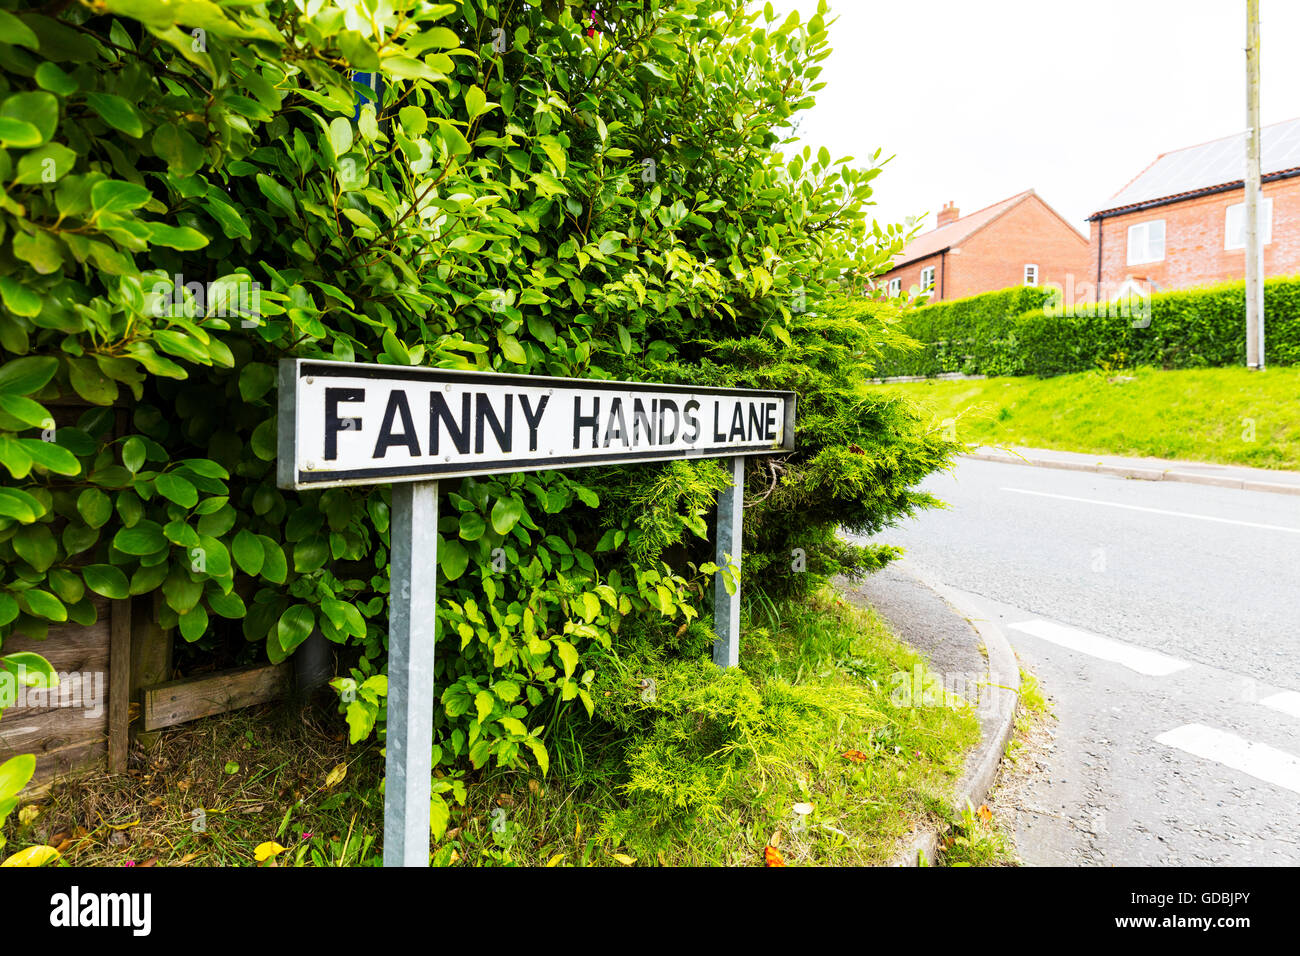 Amusant drôle signalisation routière UK signe étrange étrange insolite mains Fanny Ludford Lane Lincolnshire UK Angleterre routes noms mots Banque D'Images